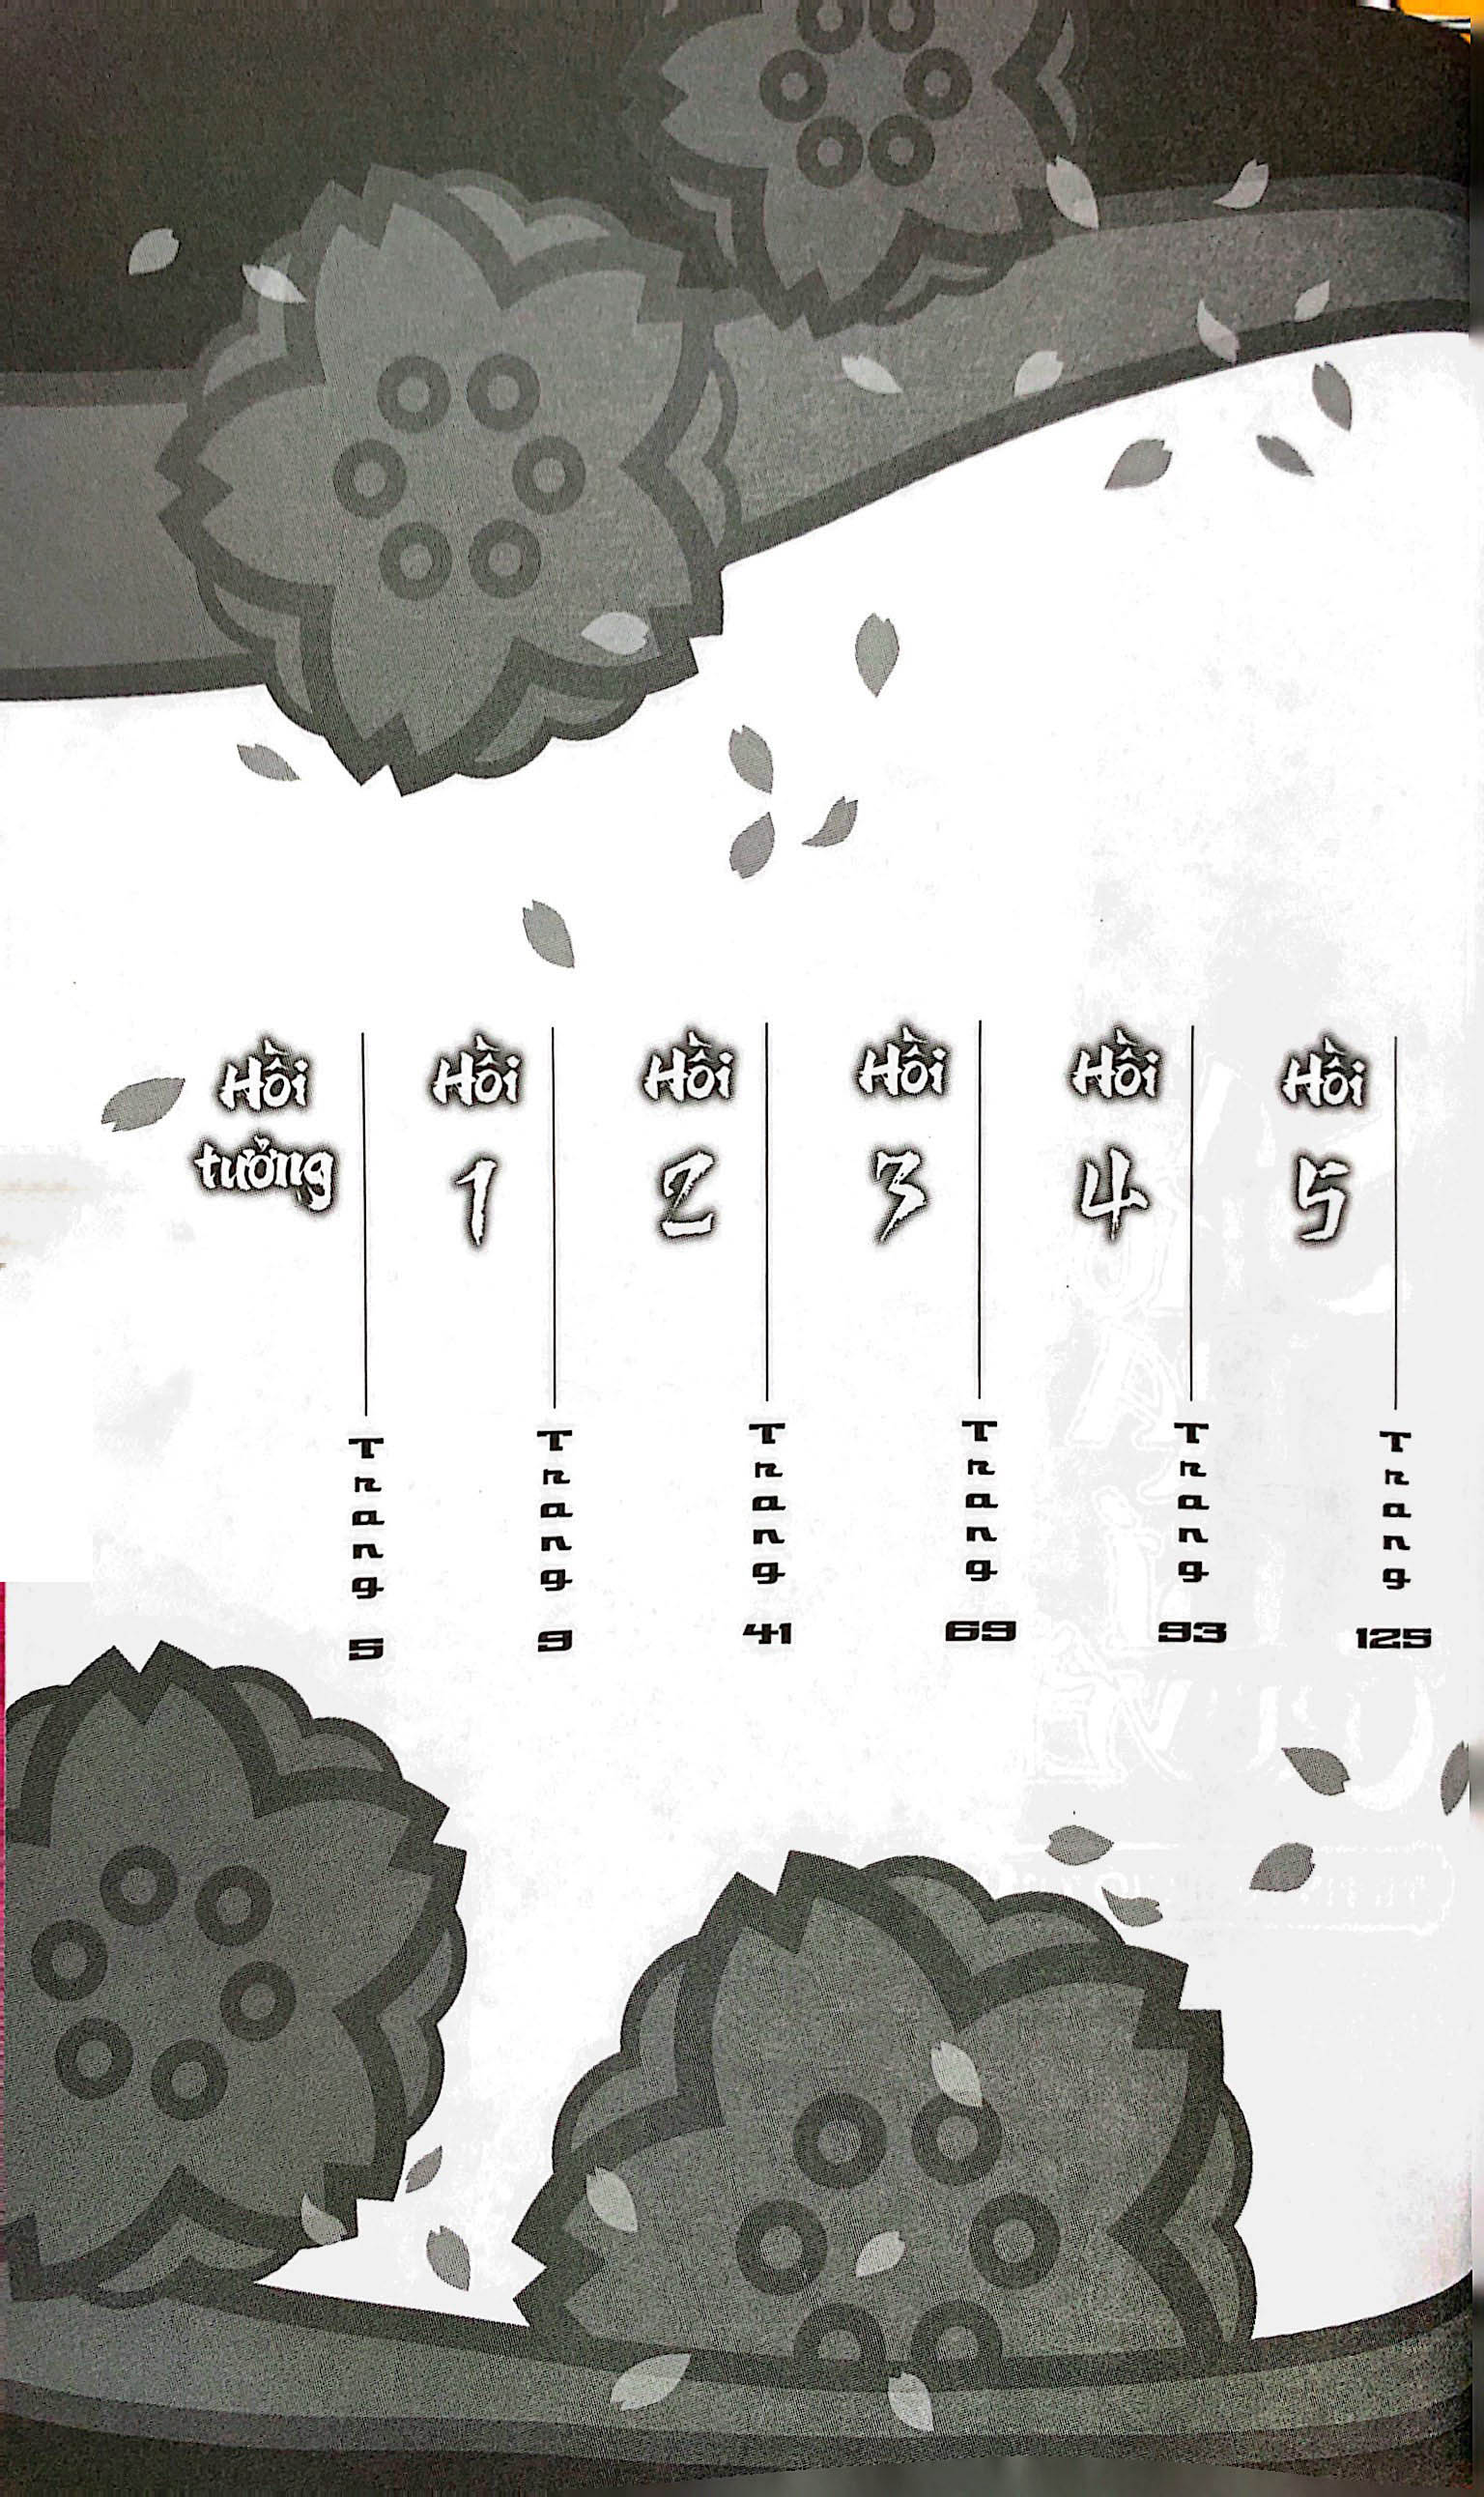 Tiểu Thuyết Naruto - Sakura Bí Truyền: Tư Tình Gửi Gió Xuân PDF